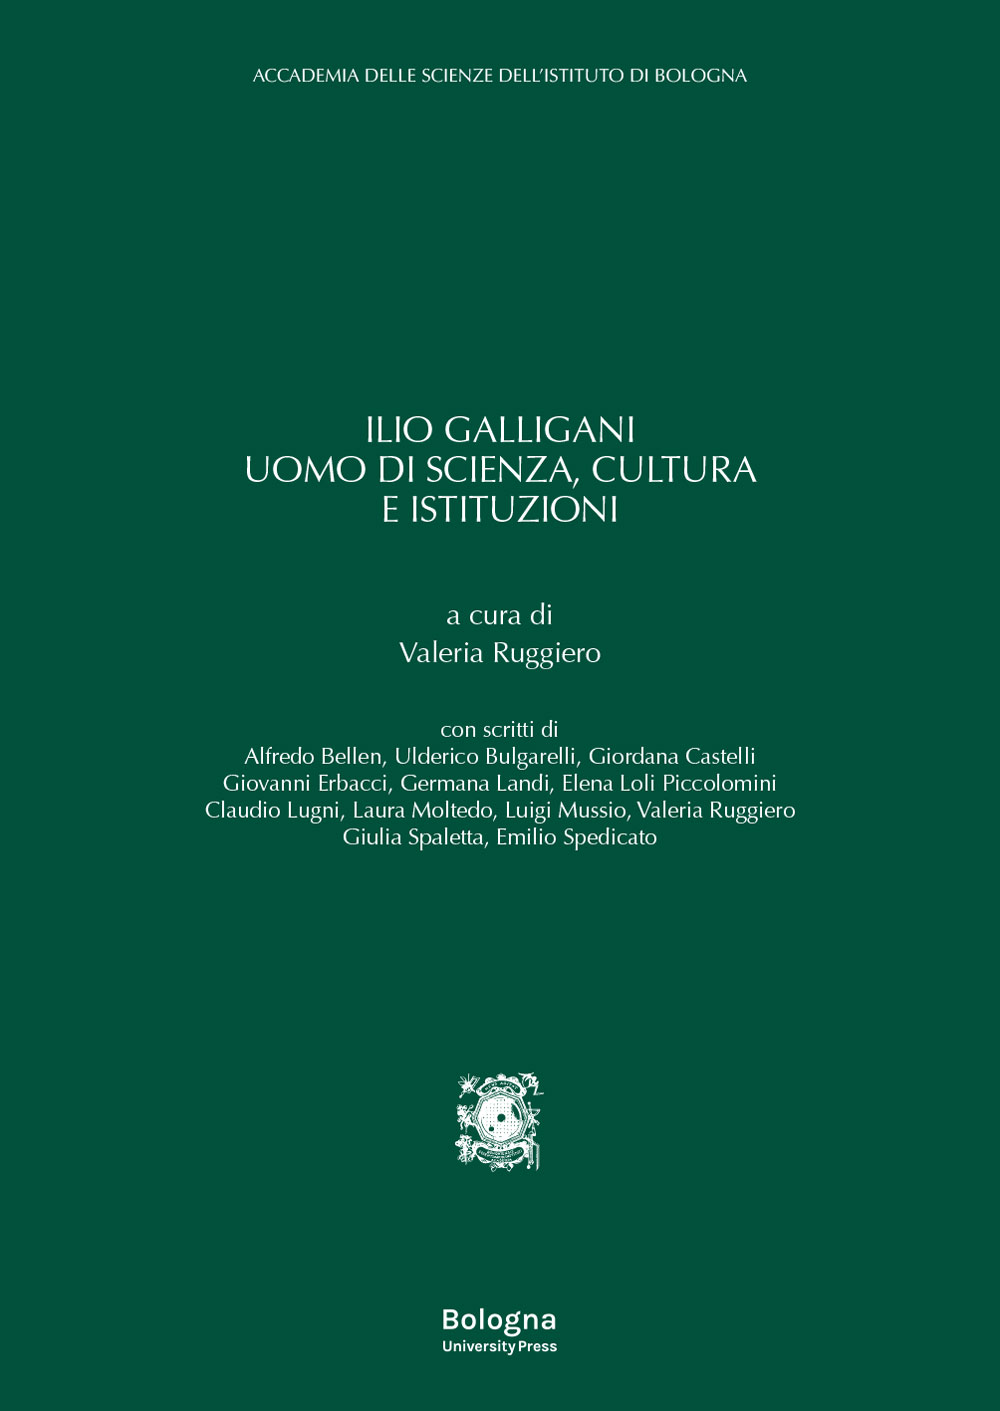 Ilio Galligani uomo di scienza, cultura e istituzioni - Bologna University Press